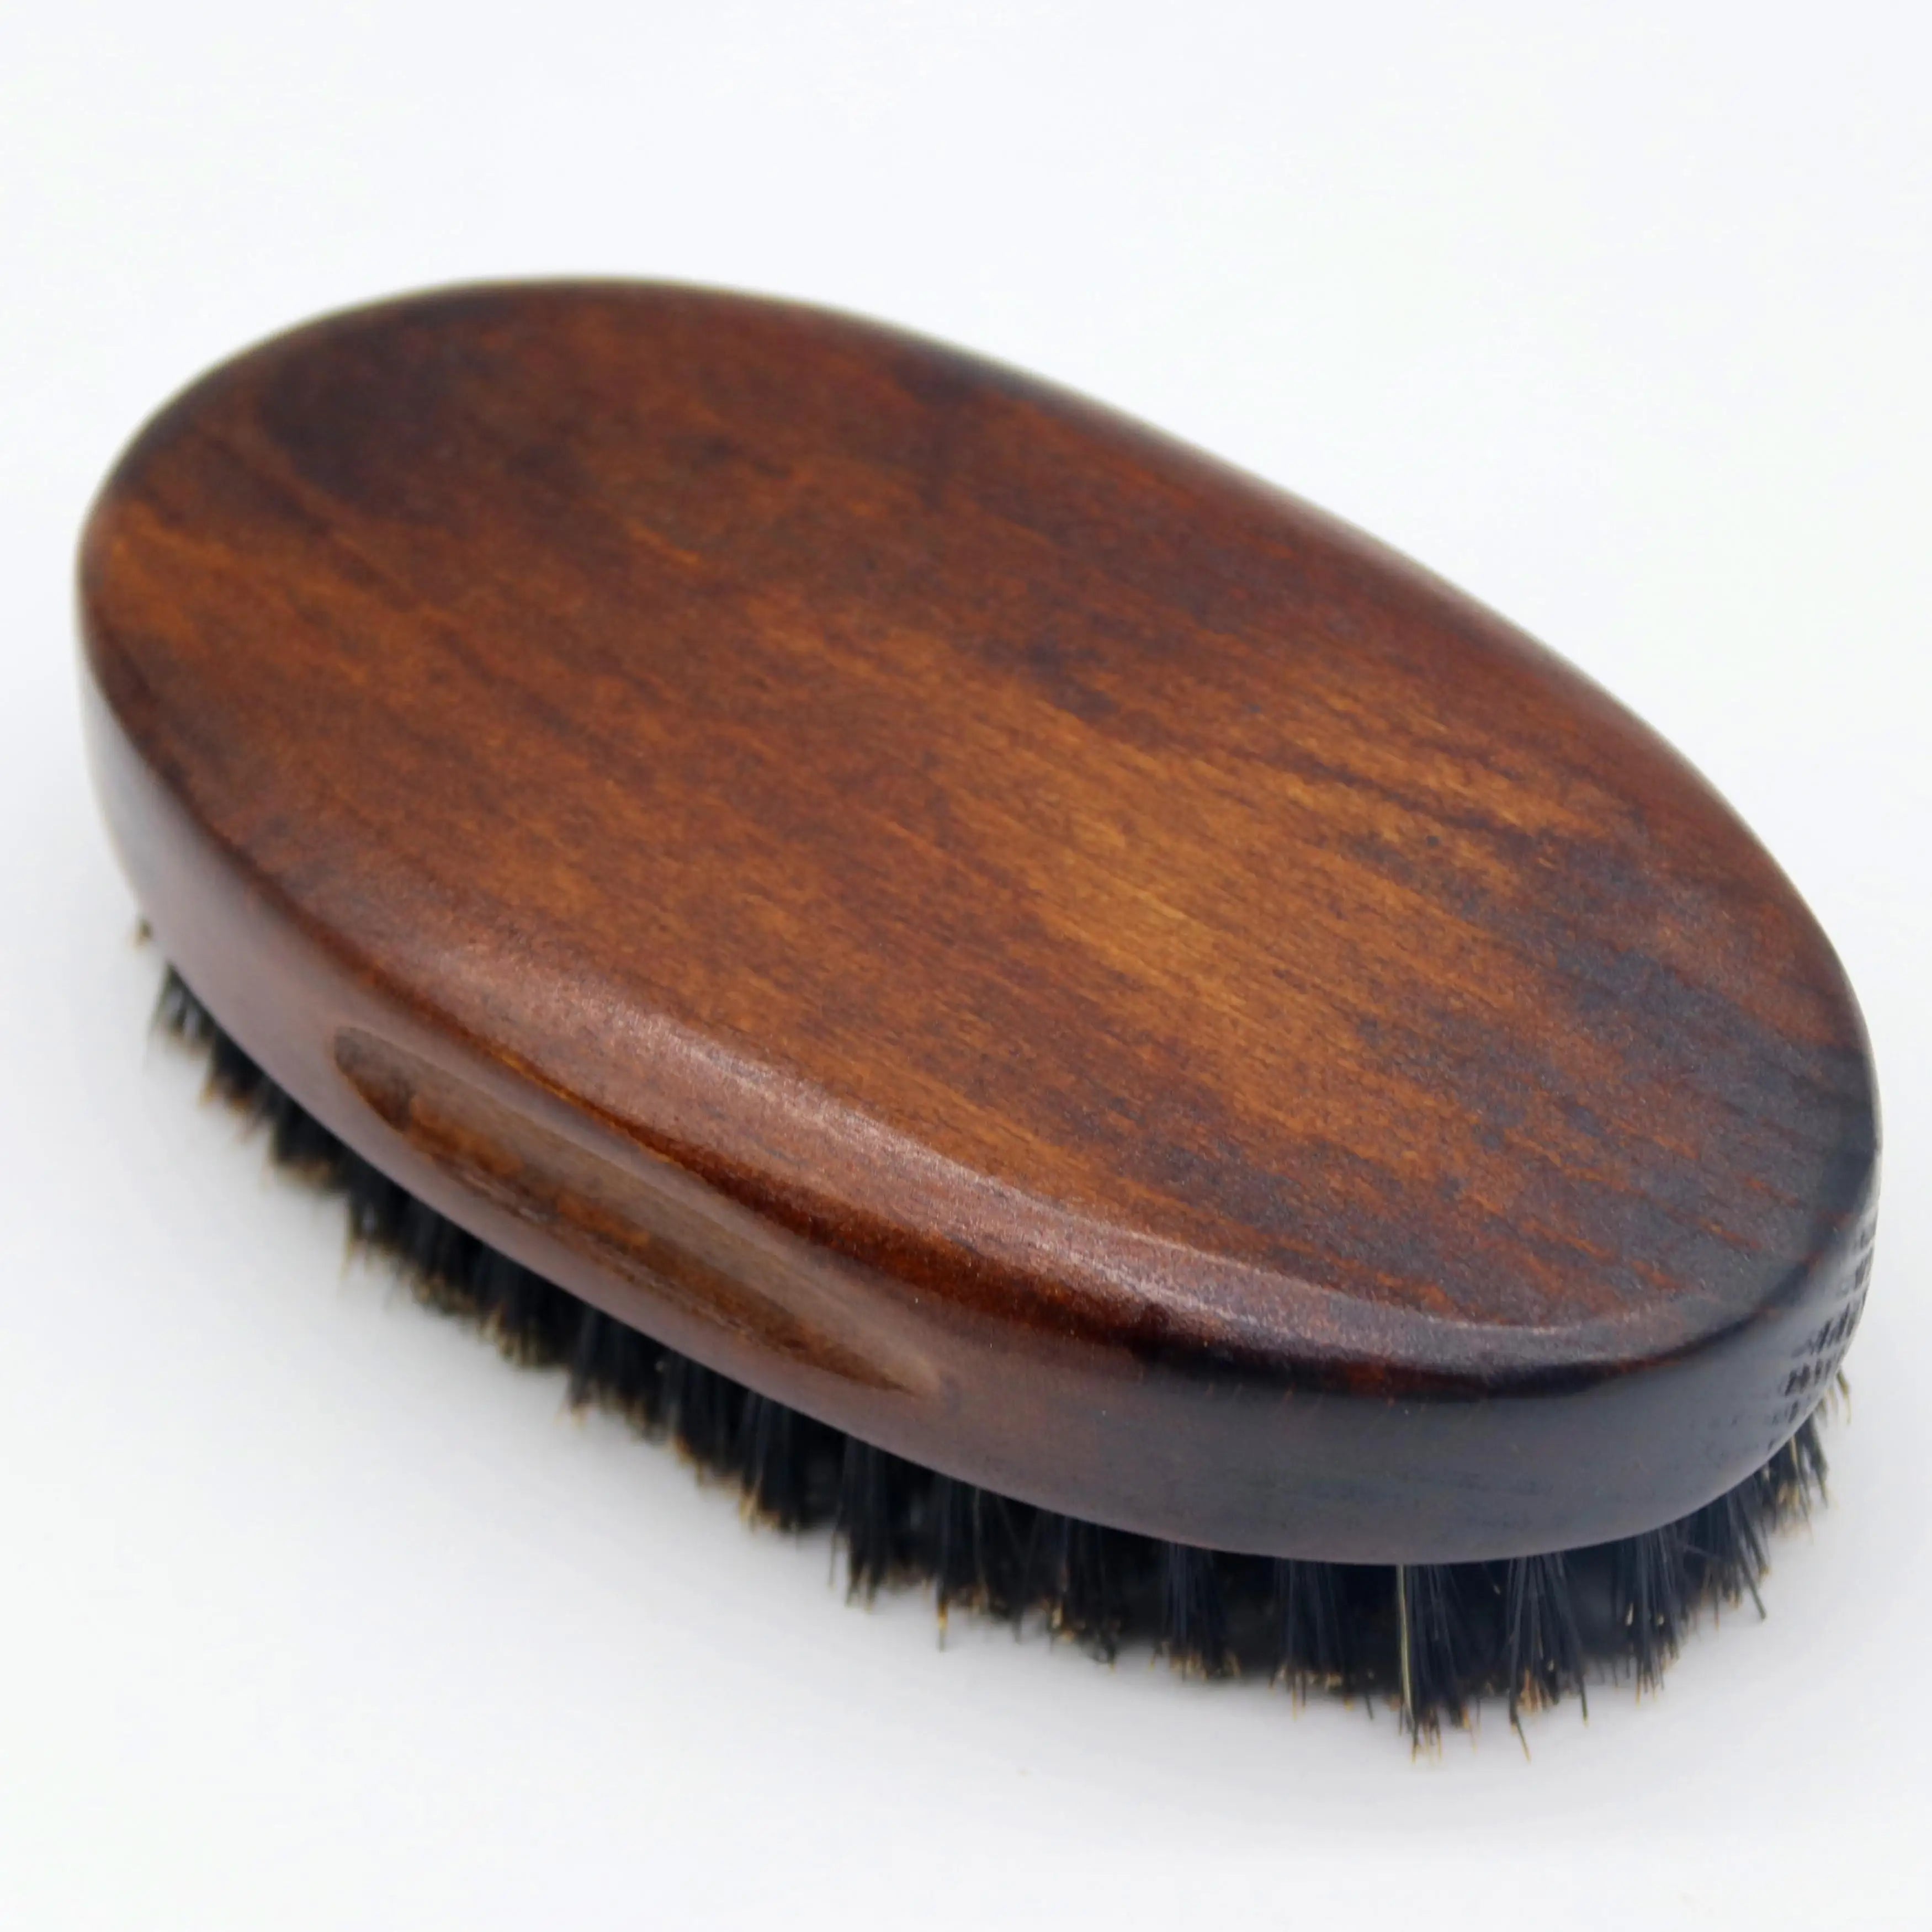 Premium Vintage Wood Men Beard Styling Brush